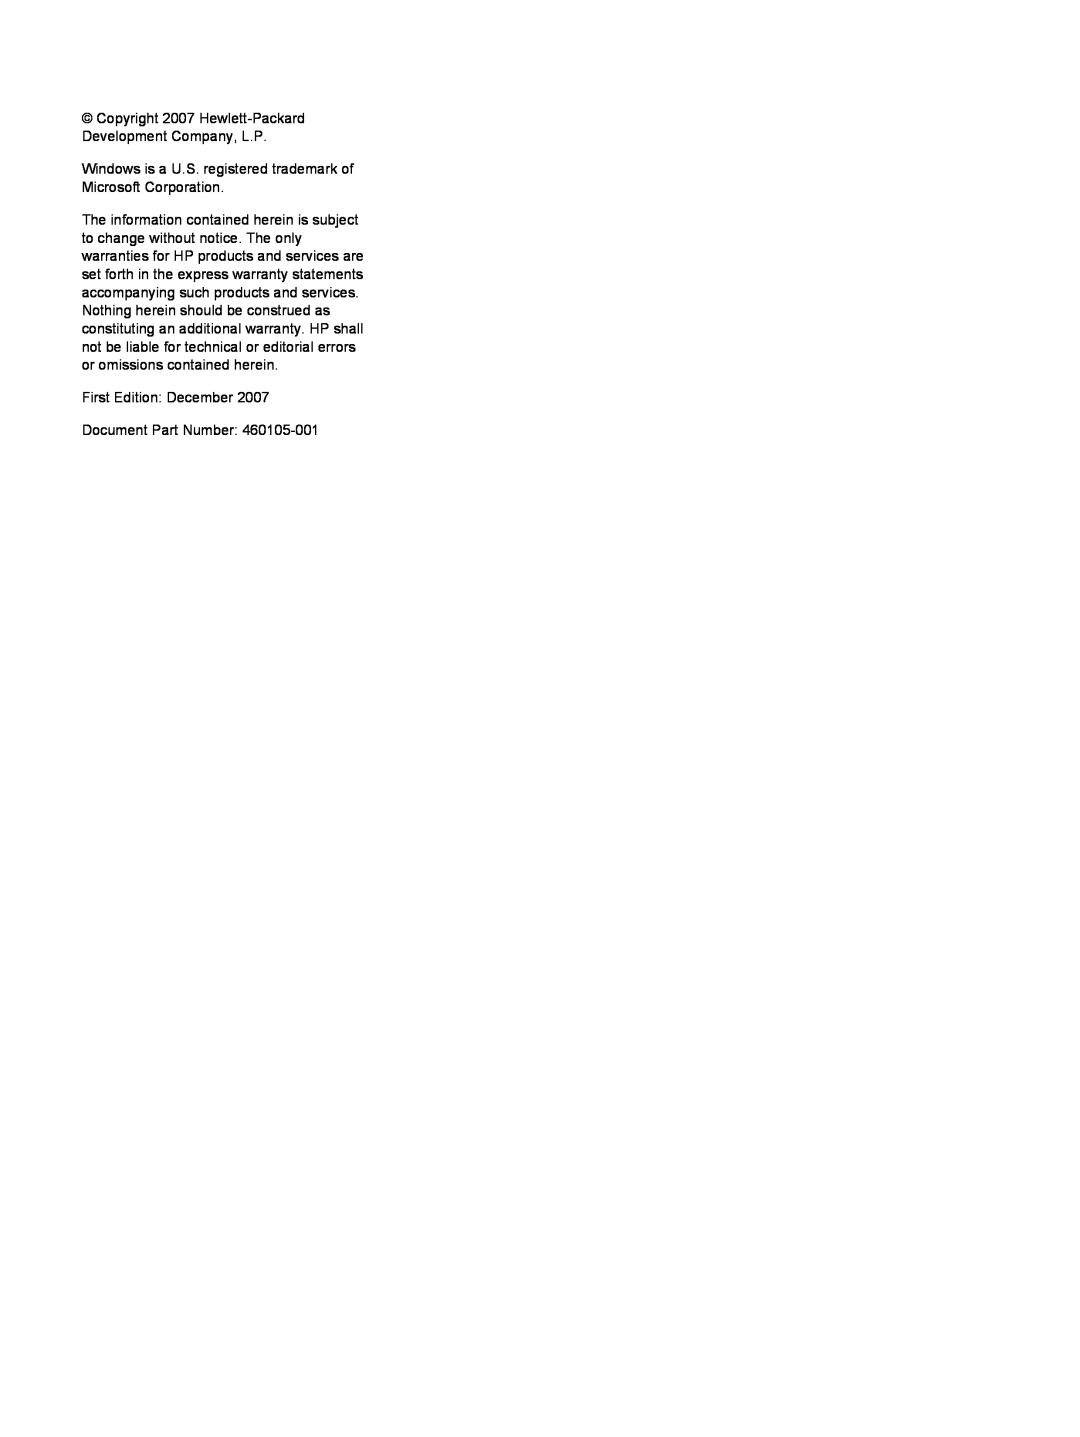 HP A924CA, A930XX Copyright 2007 Hewlett-Packard Development Company, L.P, First Edition December Document Part Number 